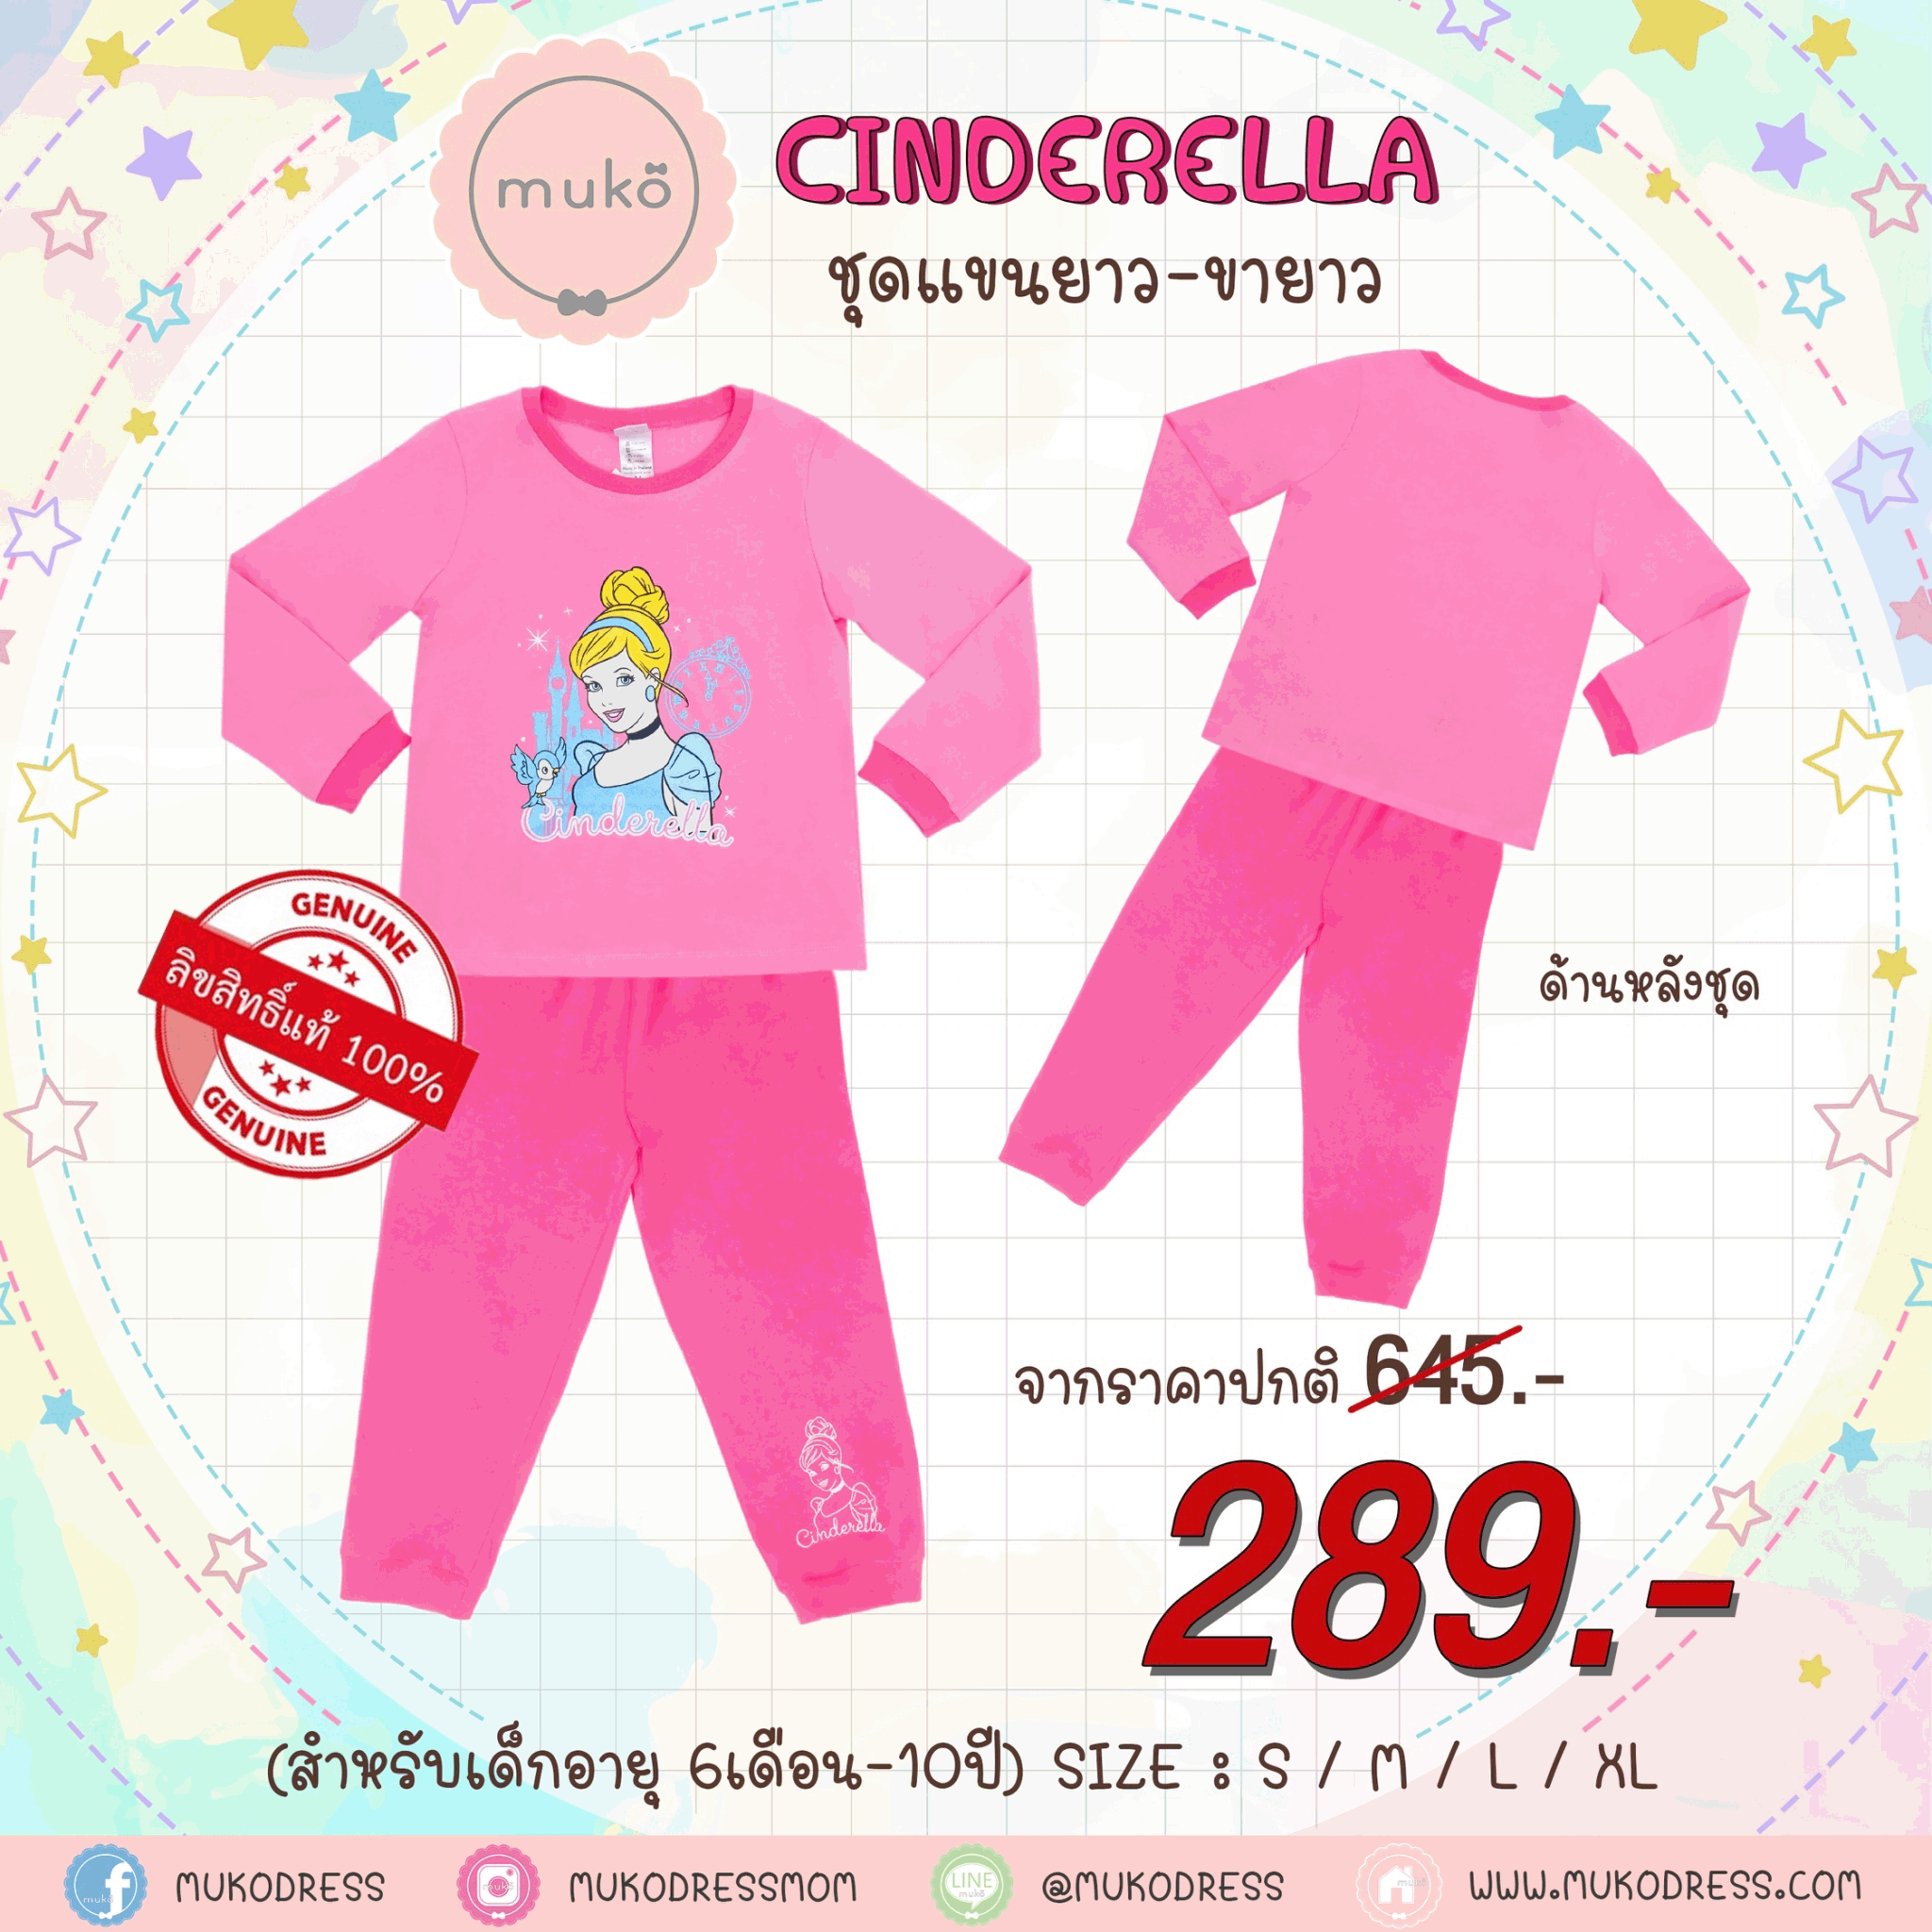 ชุดเด็ก 7-10 ขวบ แขนยาว-ขายาว (Size XL) DPC127-05-XL-Pink XL ลาย เจ้าหญิงซินเดอเรลล่า Cinderella สีชมพู (เจ้าหญิงและนกน้อย)